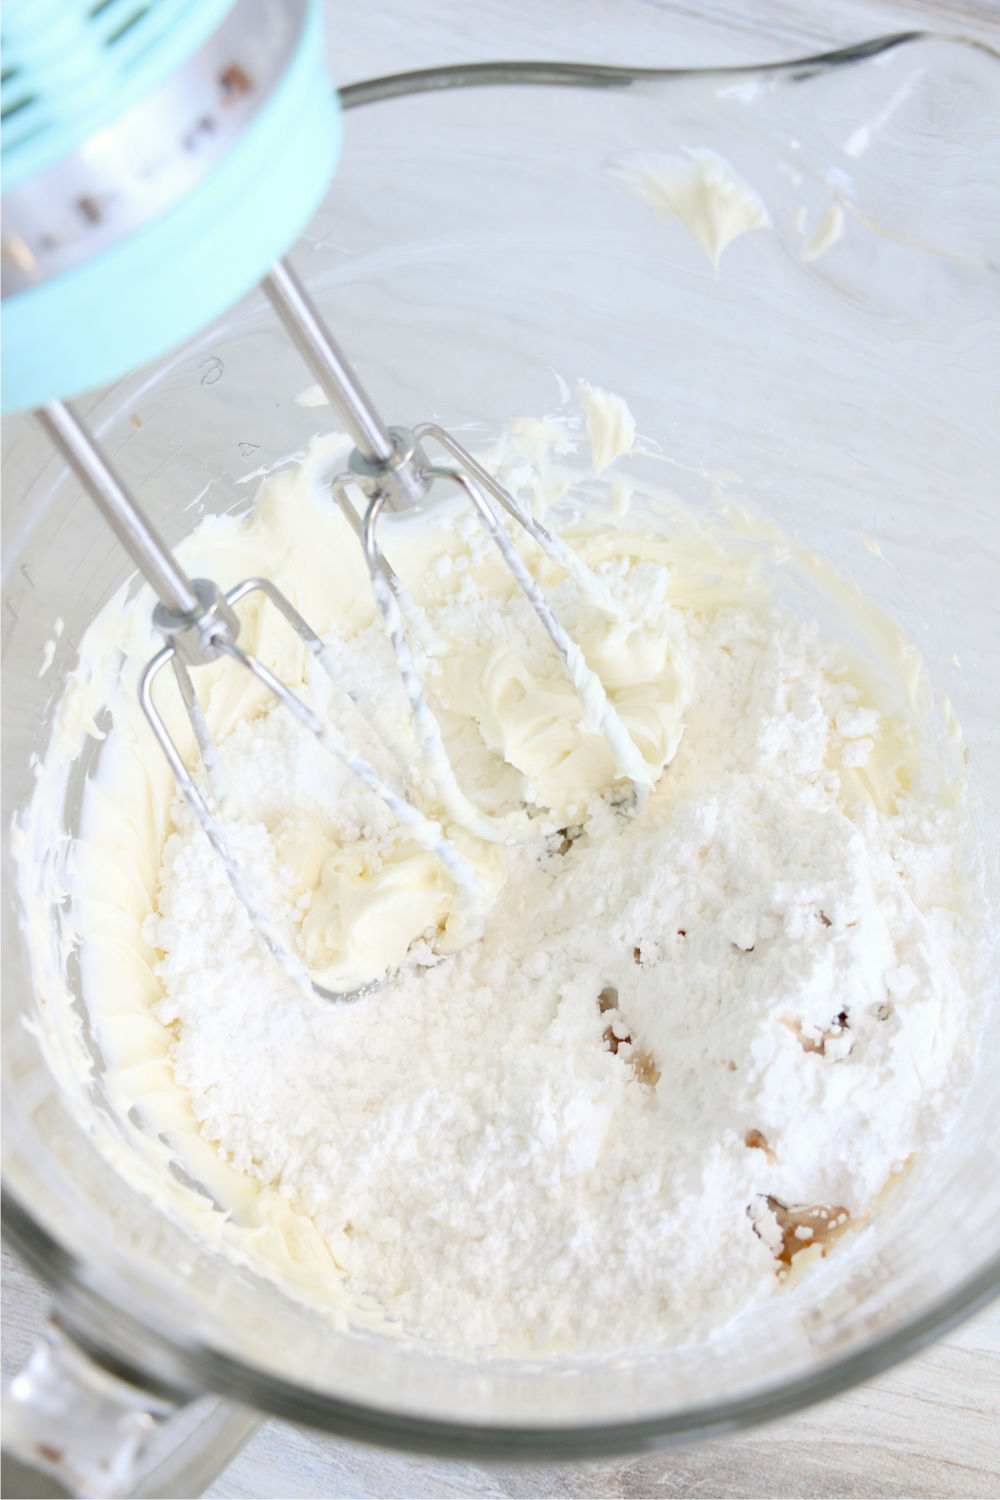 Adding powdered sugar and vanilla to cream cheese mixture